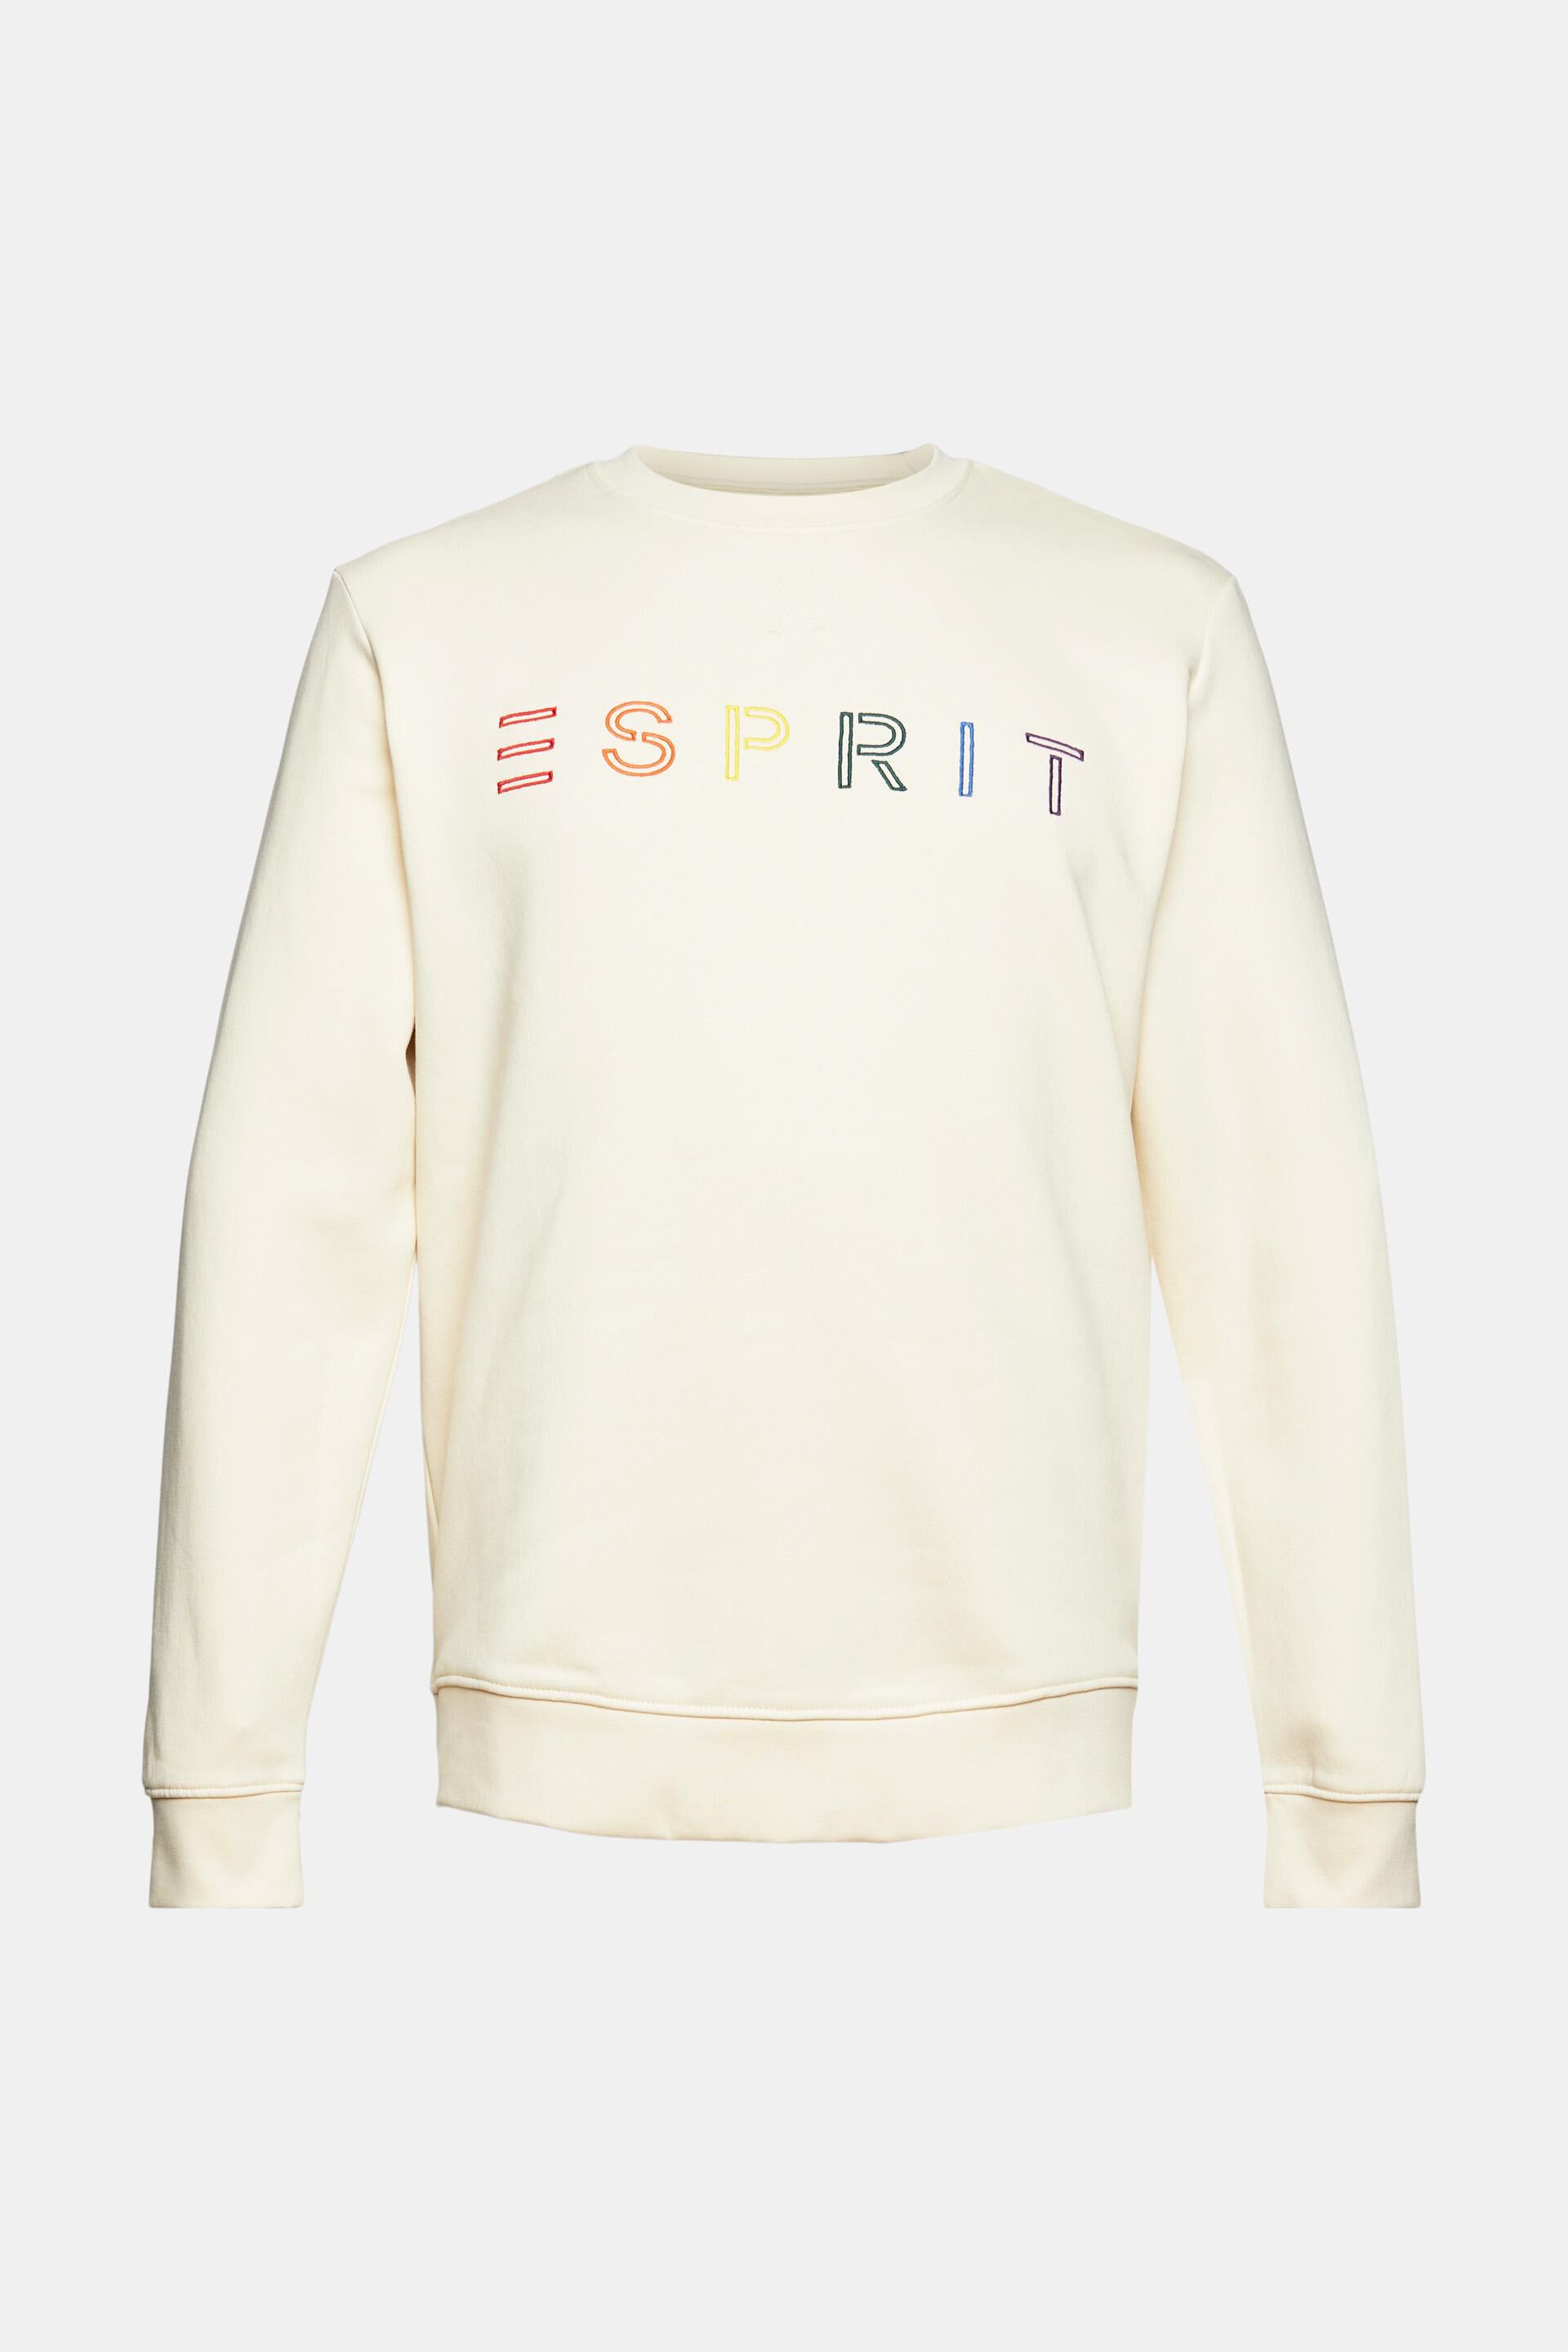 Esprit Sweater Homme